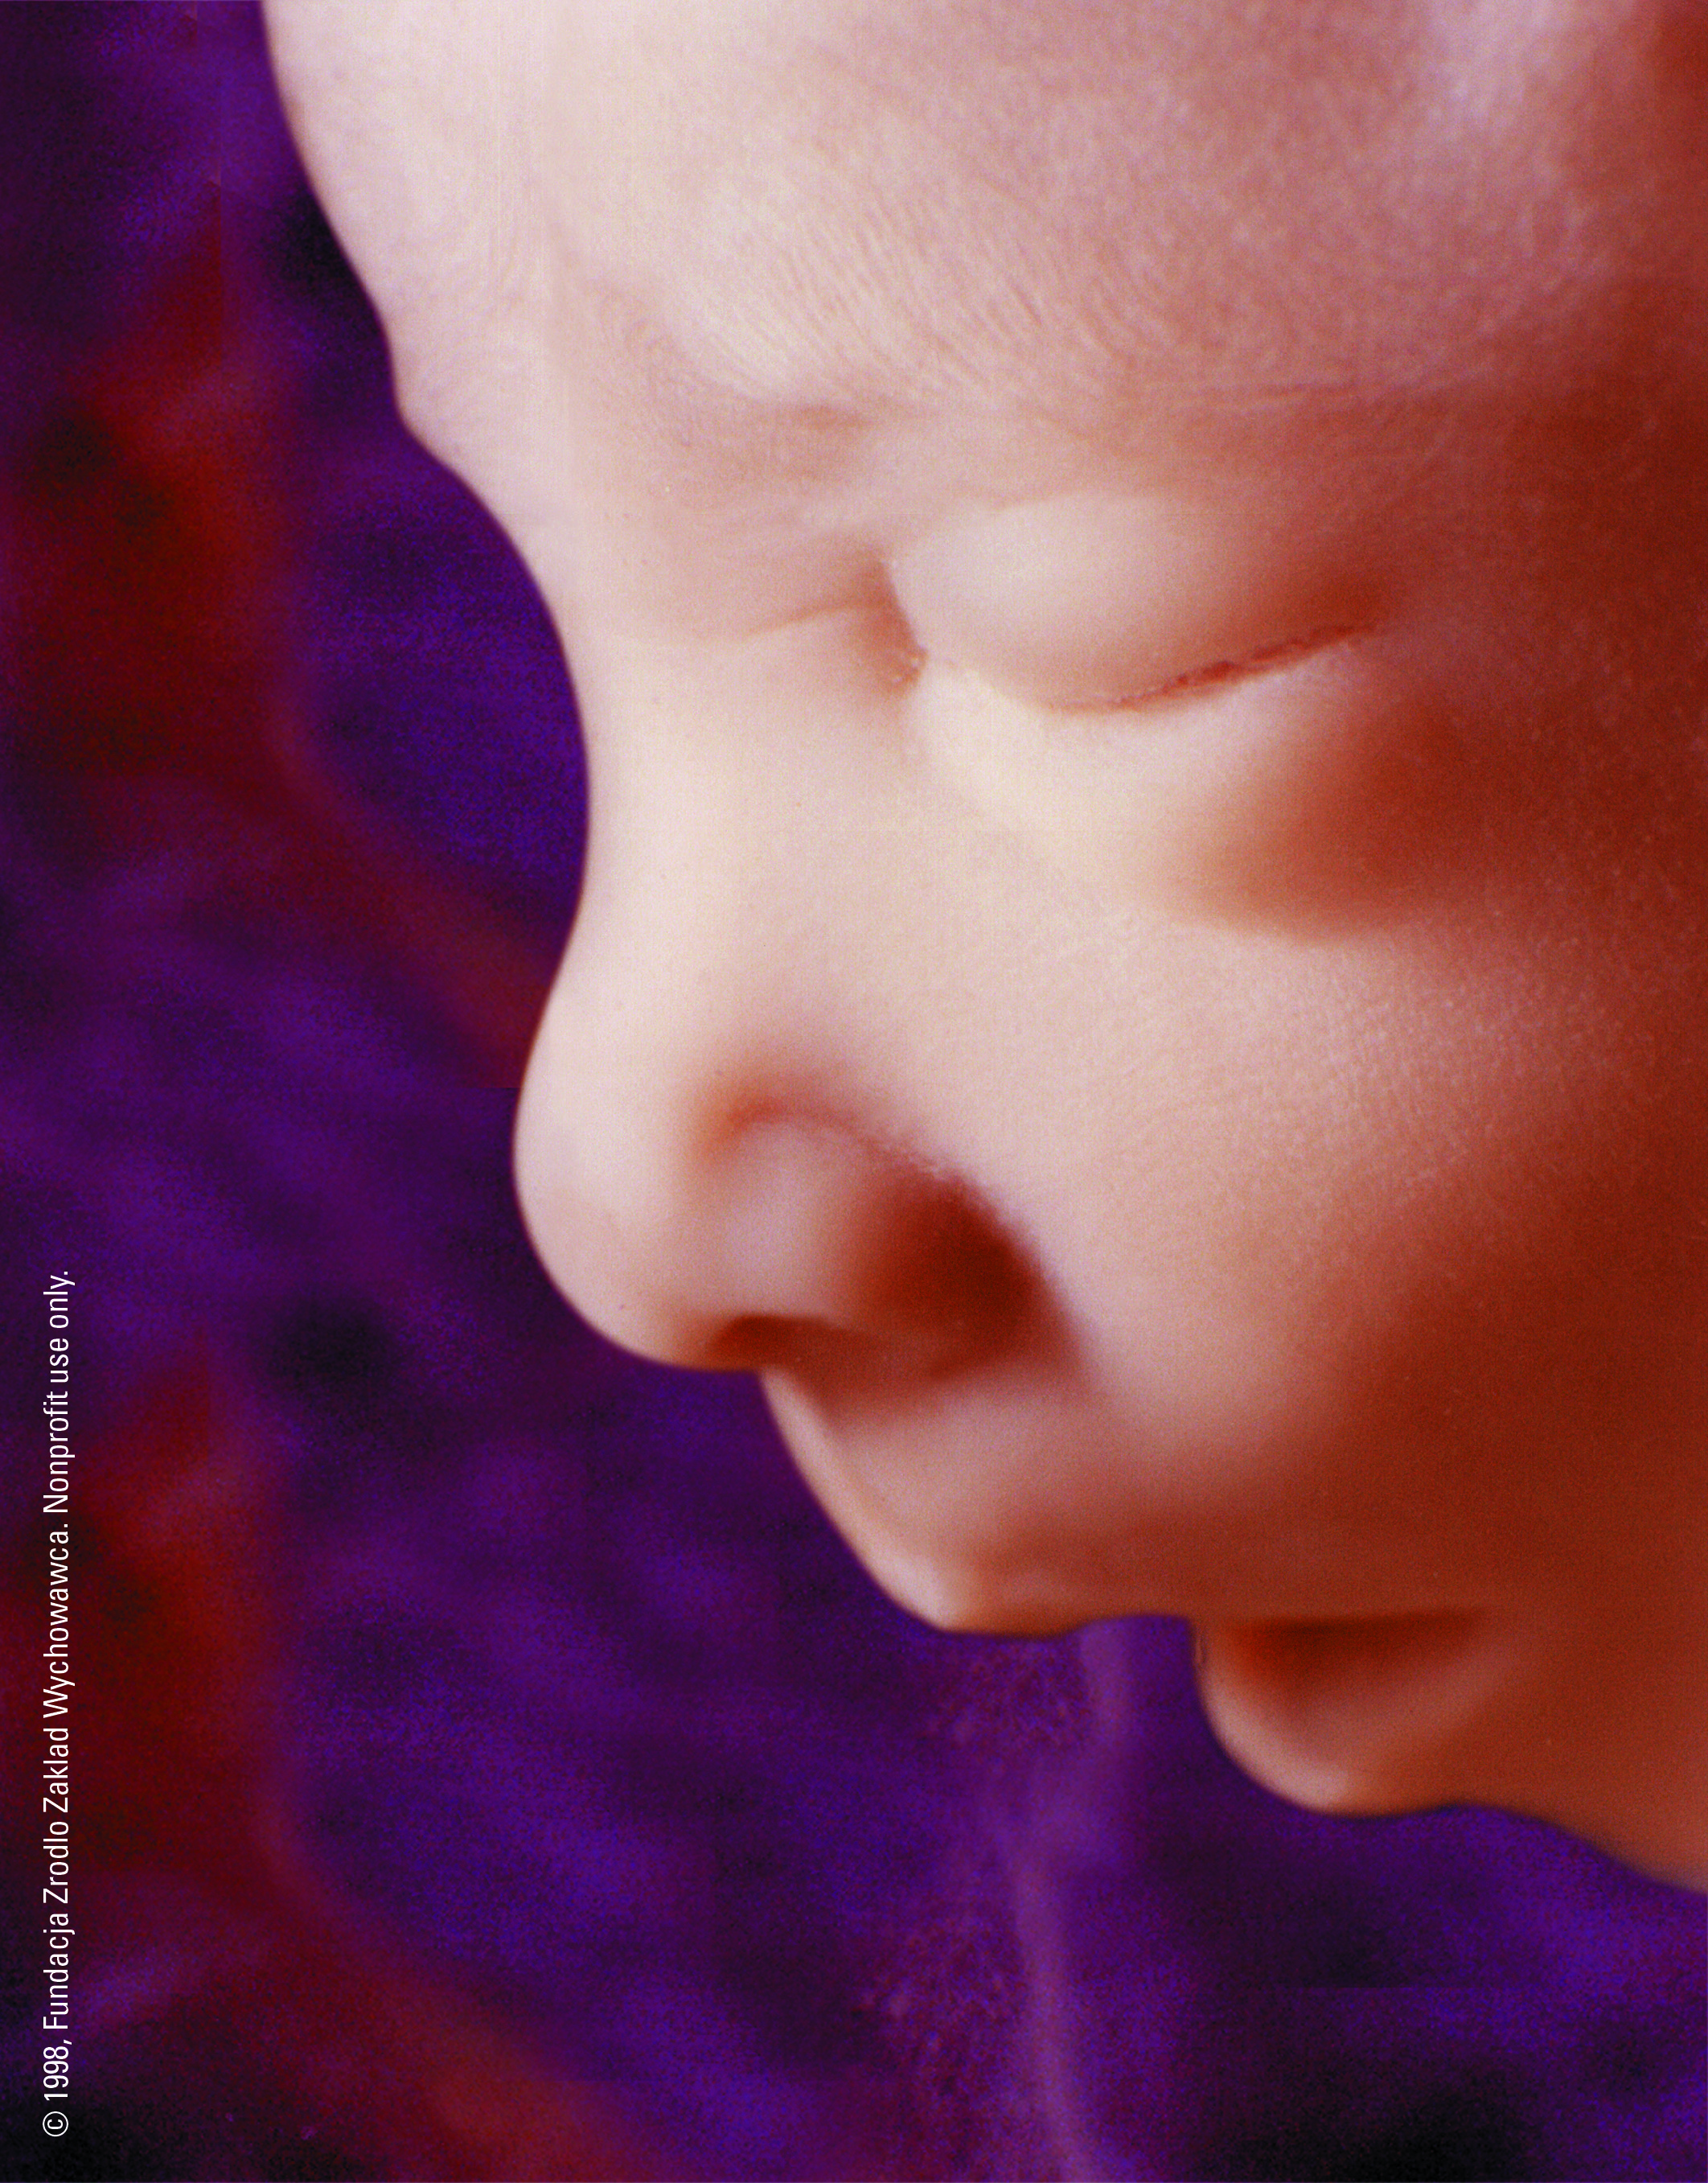 Крови 17 недель. 17 Недель беременности. Малыш на 17 неделе беременности. 17 Недель беременности фото ребенка. Лицо младенца.